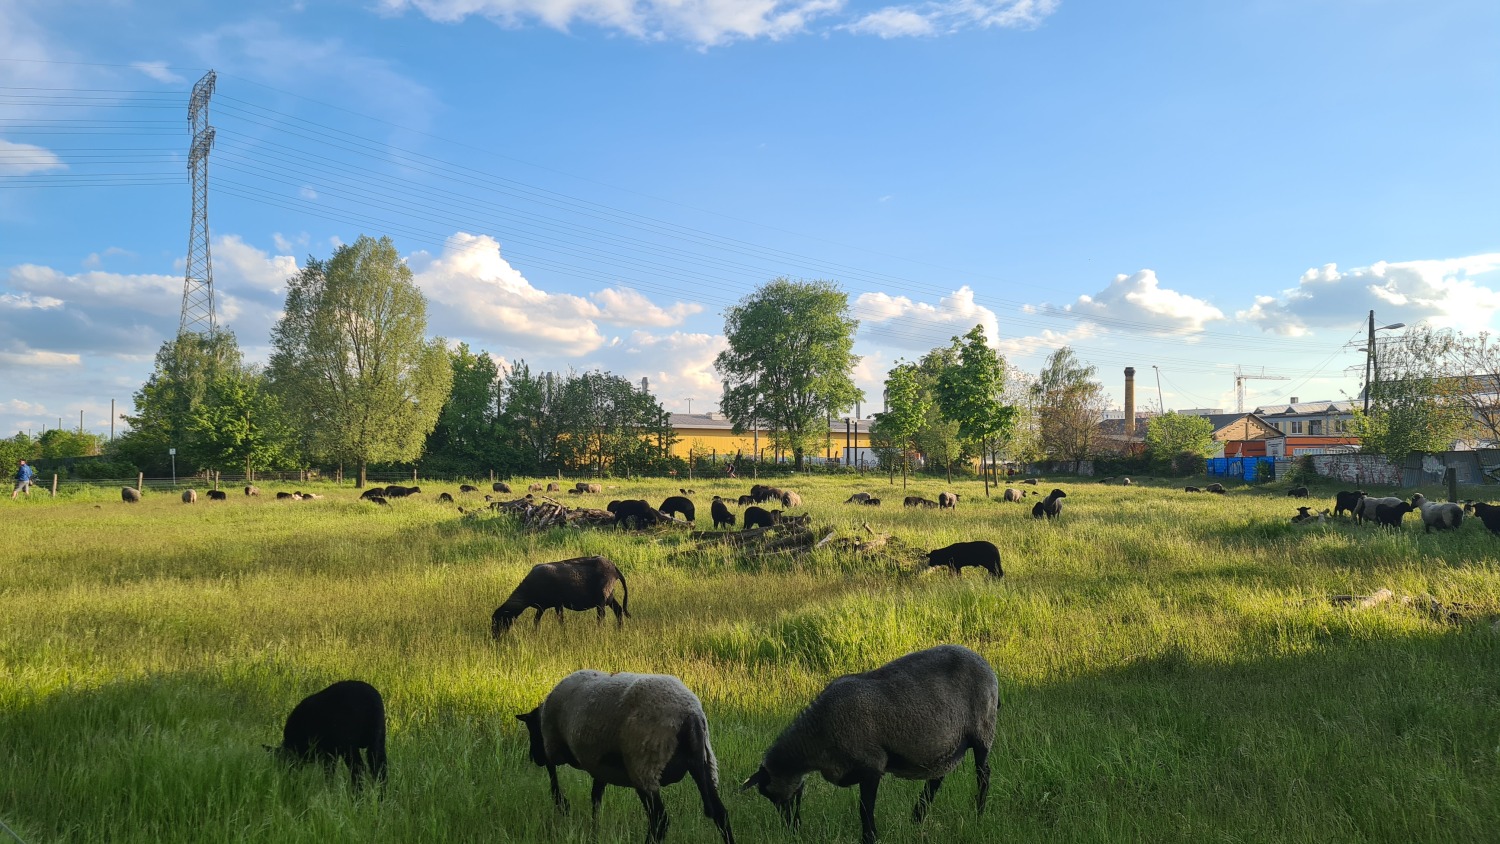 Schafbeweidung im LSG Herzberge - Der Landschafspark hat seit 2018 Schutzstatus als Landschaftsschutzgebiet Herzberge. Ein Großteil der Flächen wird durch Schafbeweidung gepflegt, Bildvordergrund: Rauhwollige Pommersche Landschafe beim Weiden